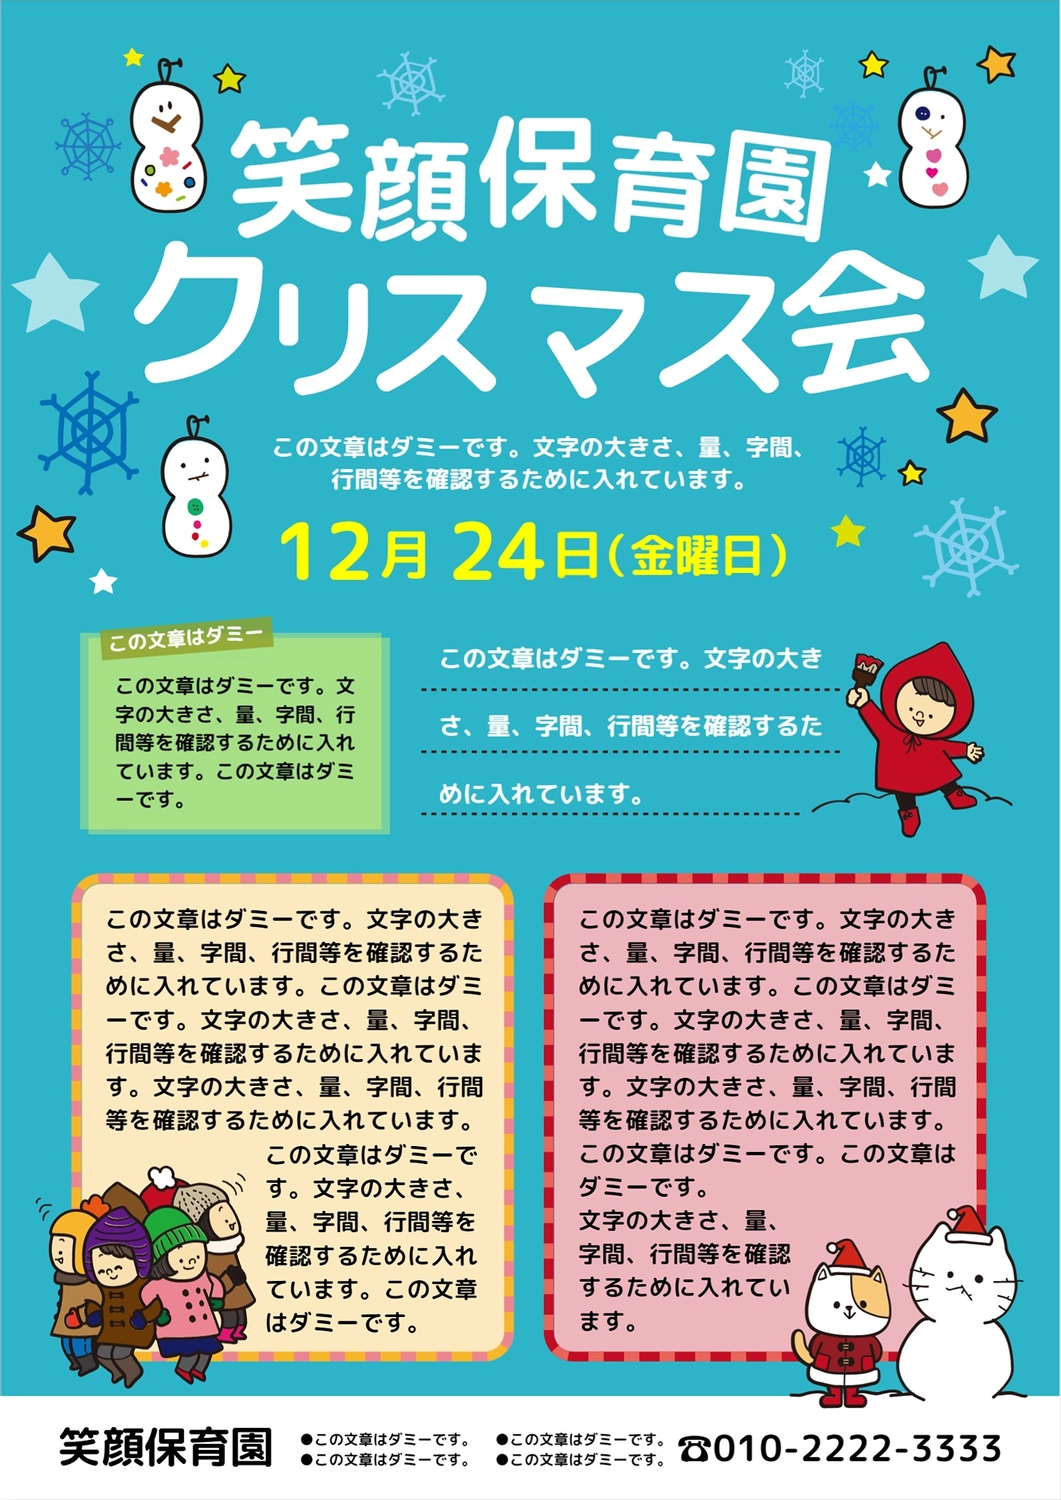 クリスマス会のお知らせ　ゆきだるま, snowman, nursery school news, gloves, News template